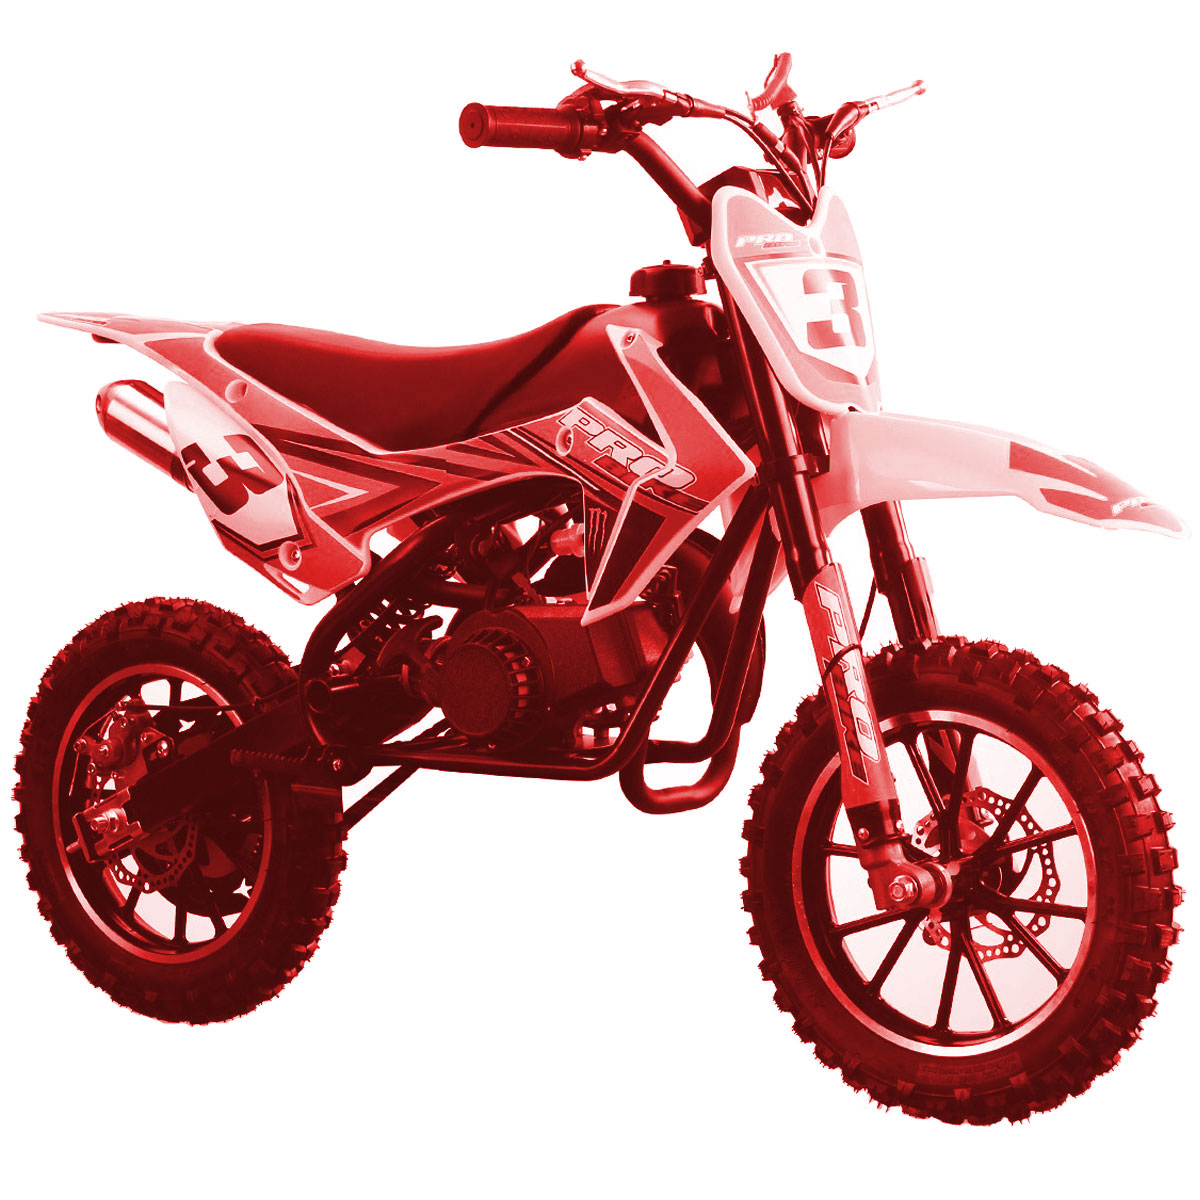 Motocross enfant 50cc de chez Probike, disponible en couleur rouge